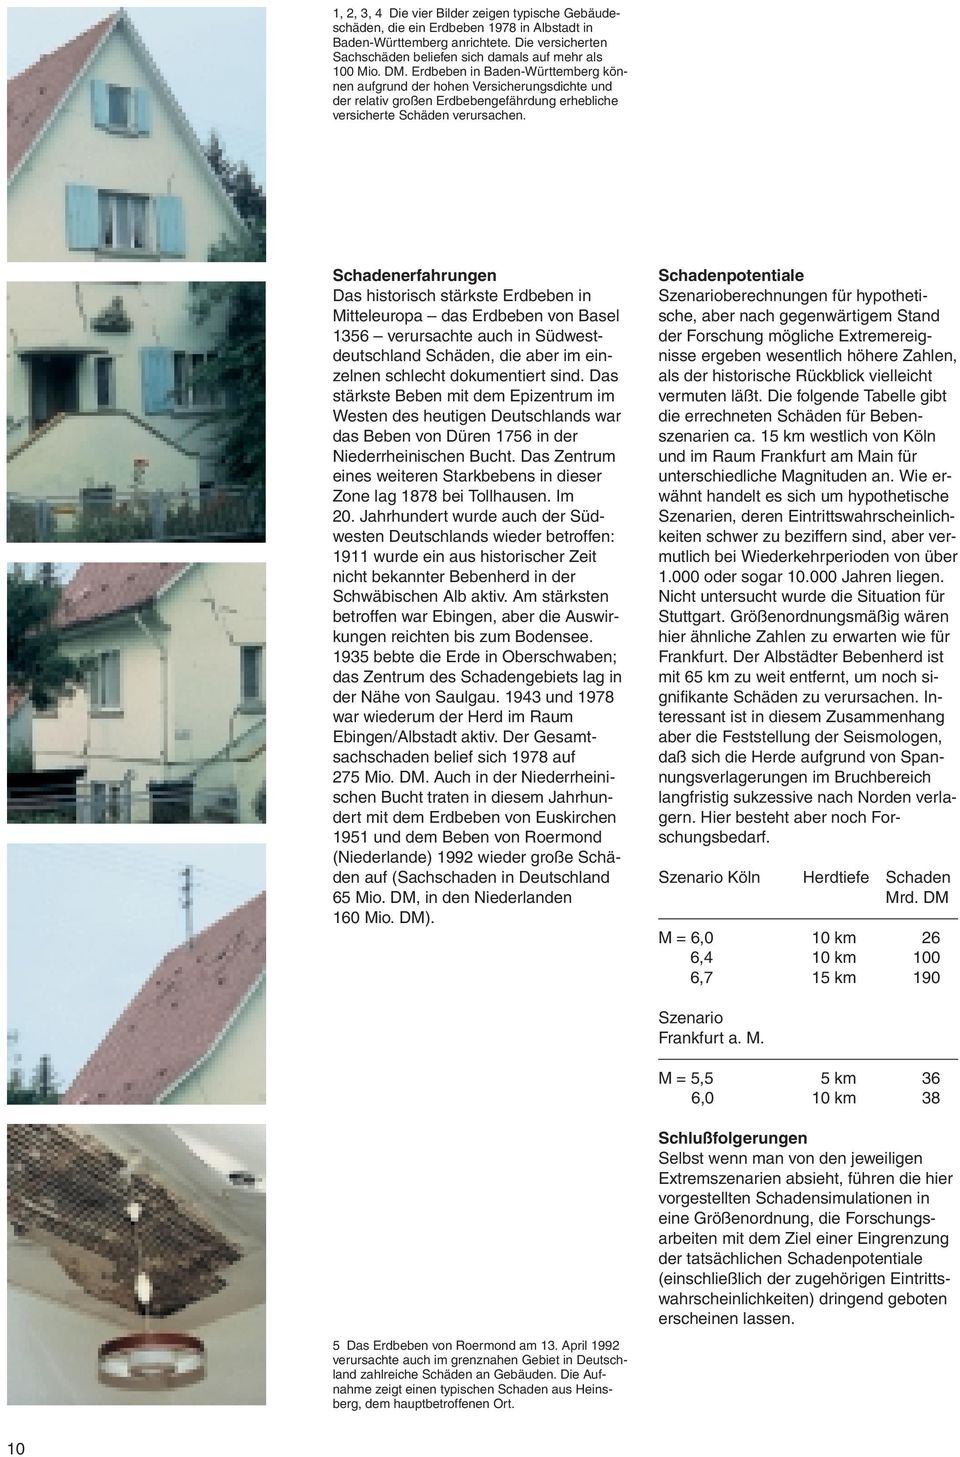 chadenerfahrungen Das historisch stärkste Erdbeben in Mitteleuropa das Erdbeben von Basel 1356 verursachte auch in üdwestdeutschland chäden, die aber im einzelnen schlecht dokumentiert sind.